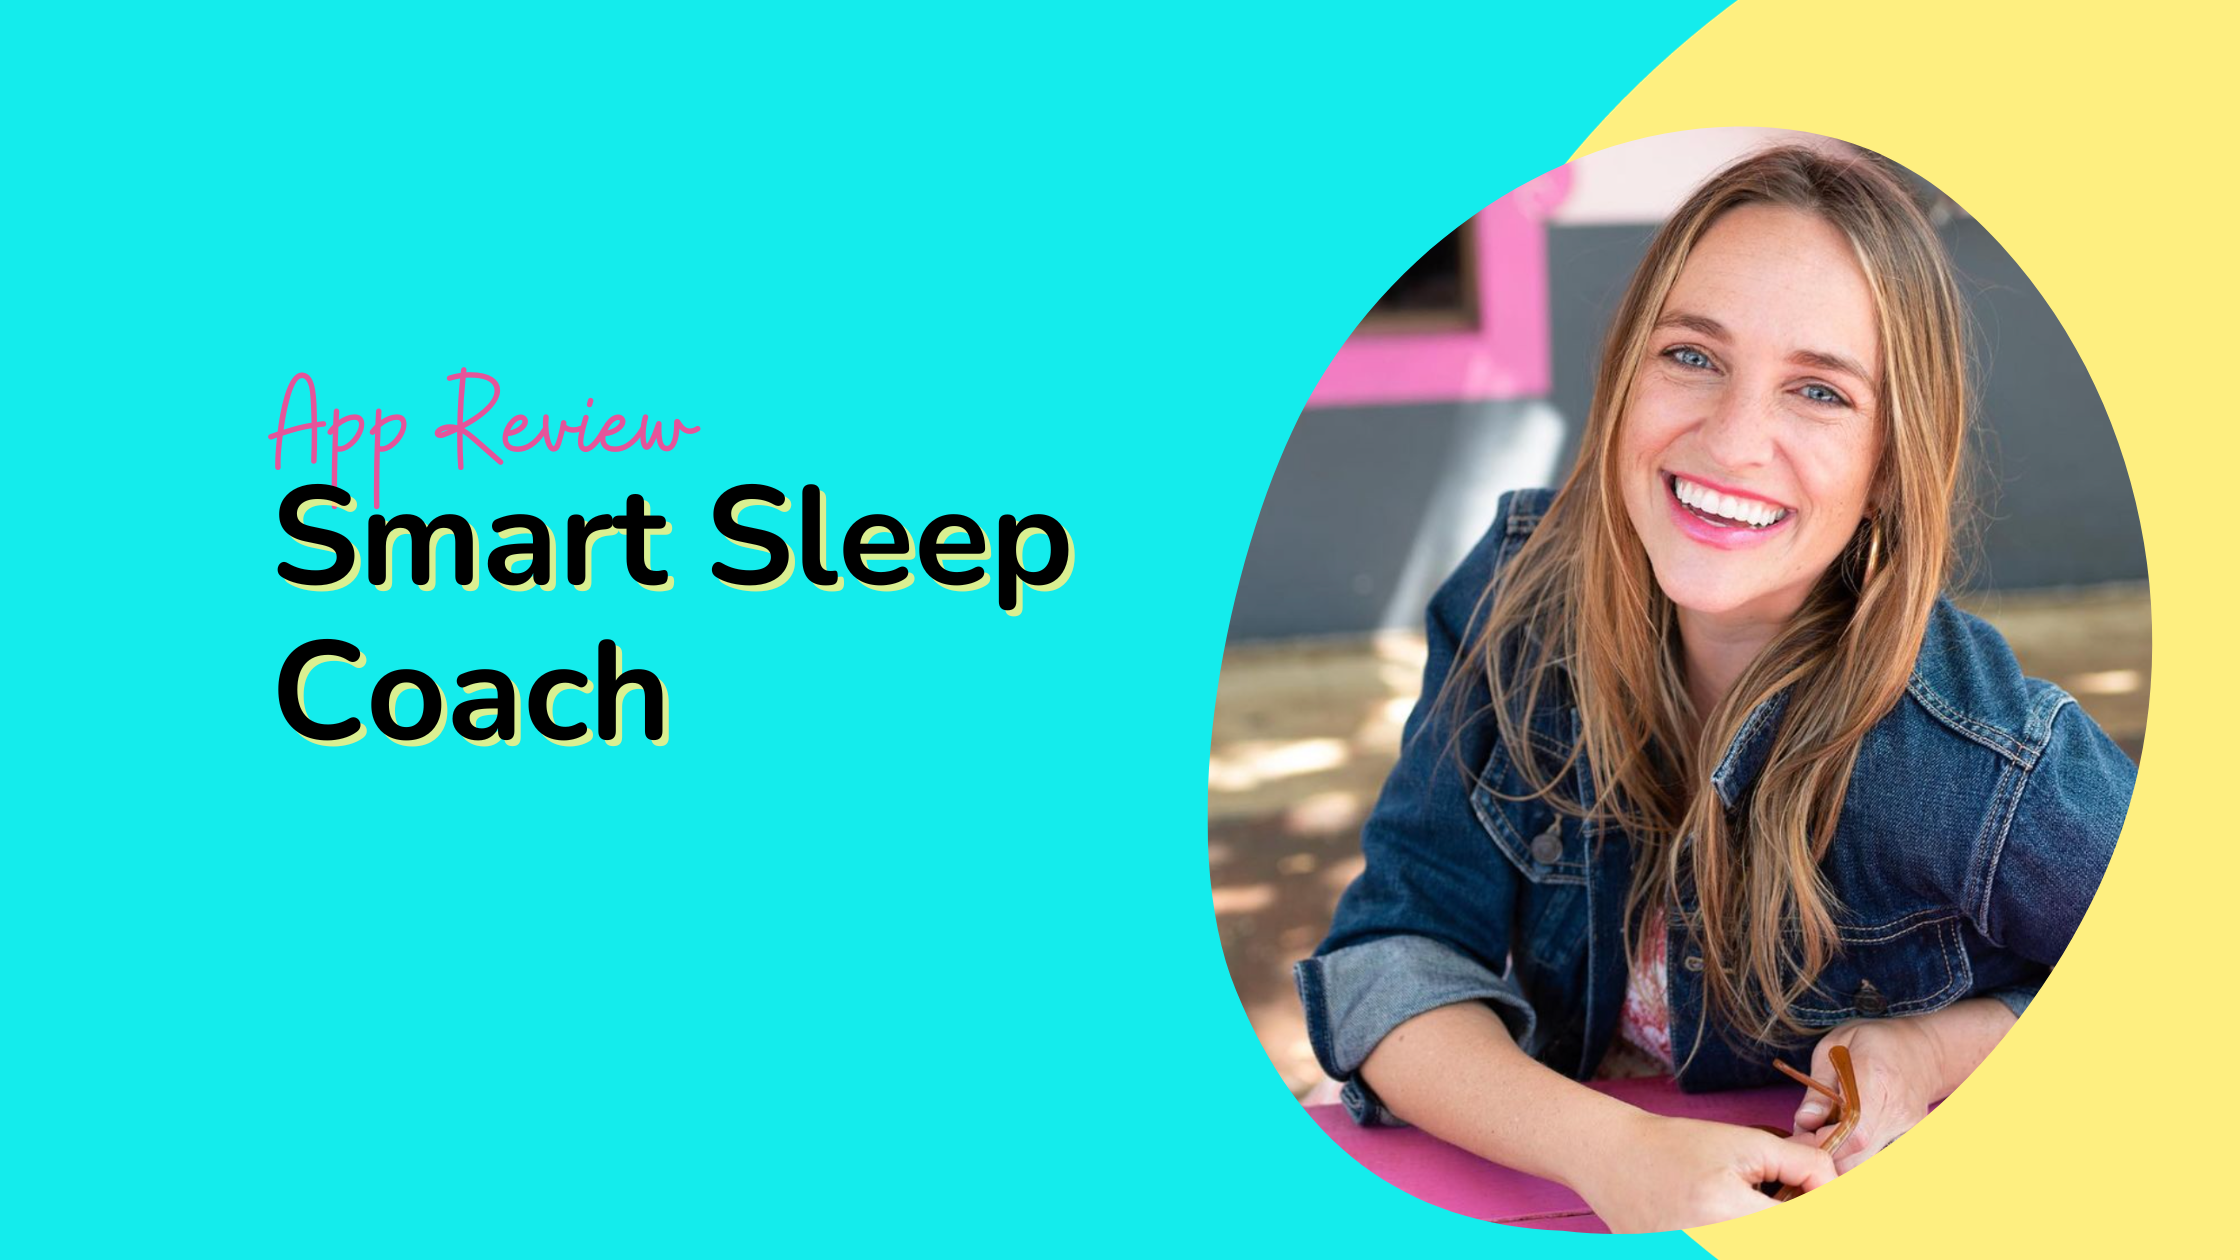 Sleepcoach - Articles, Tips & Advice